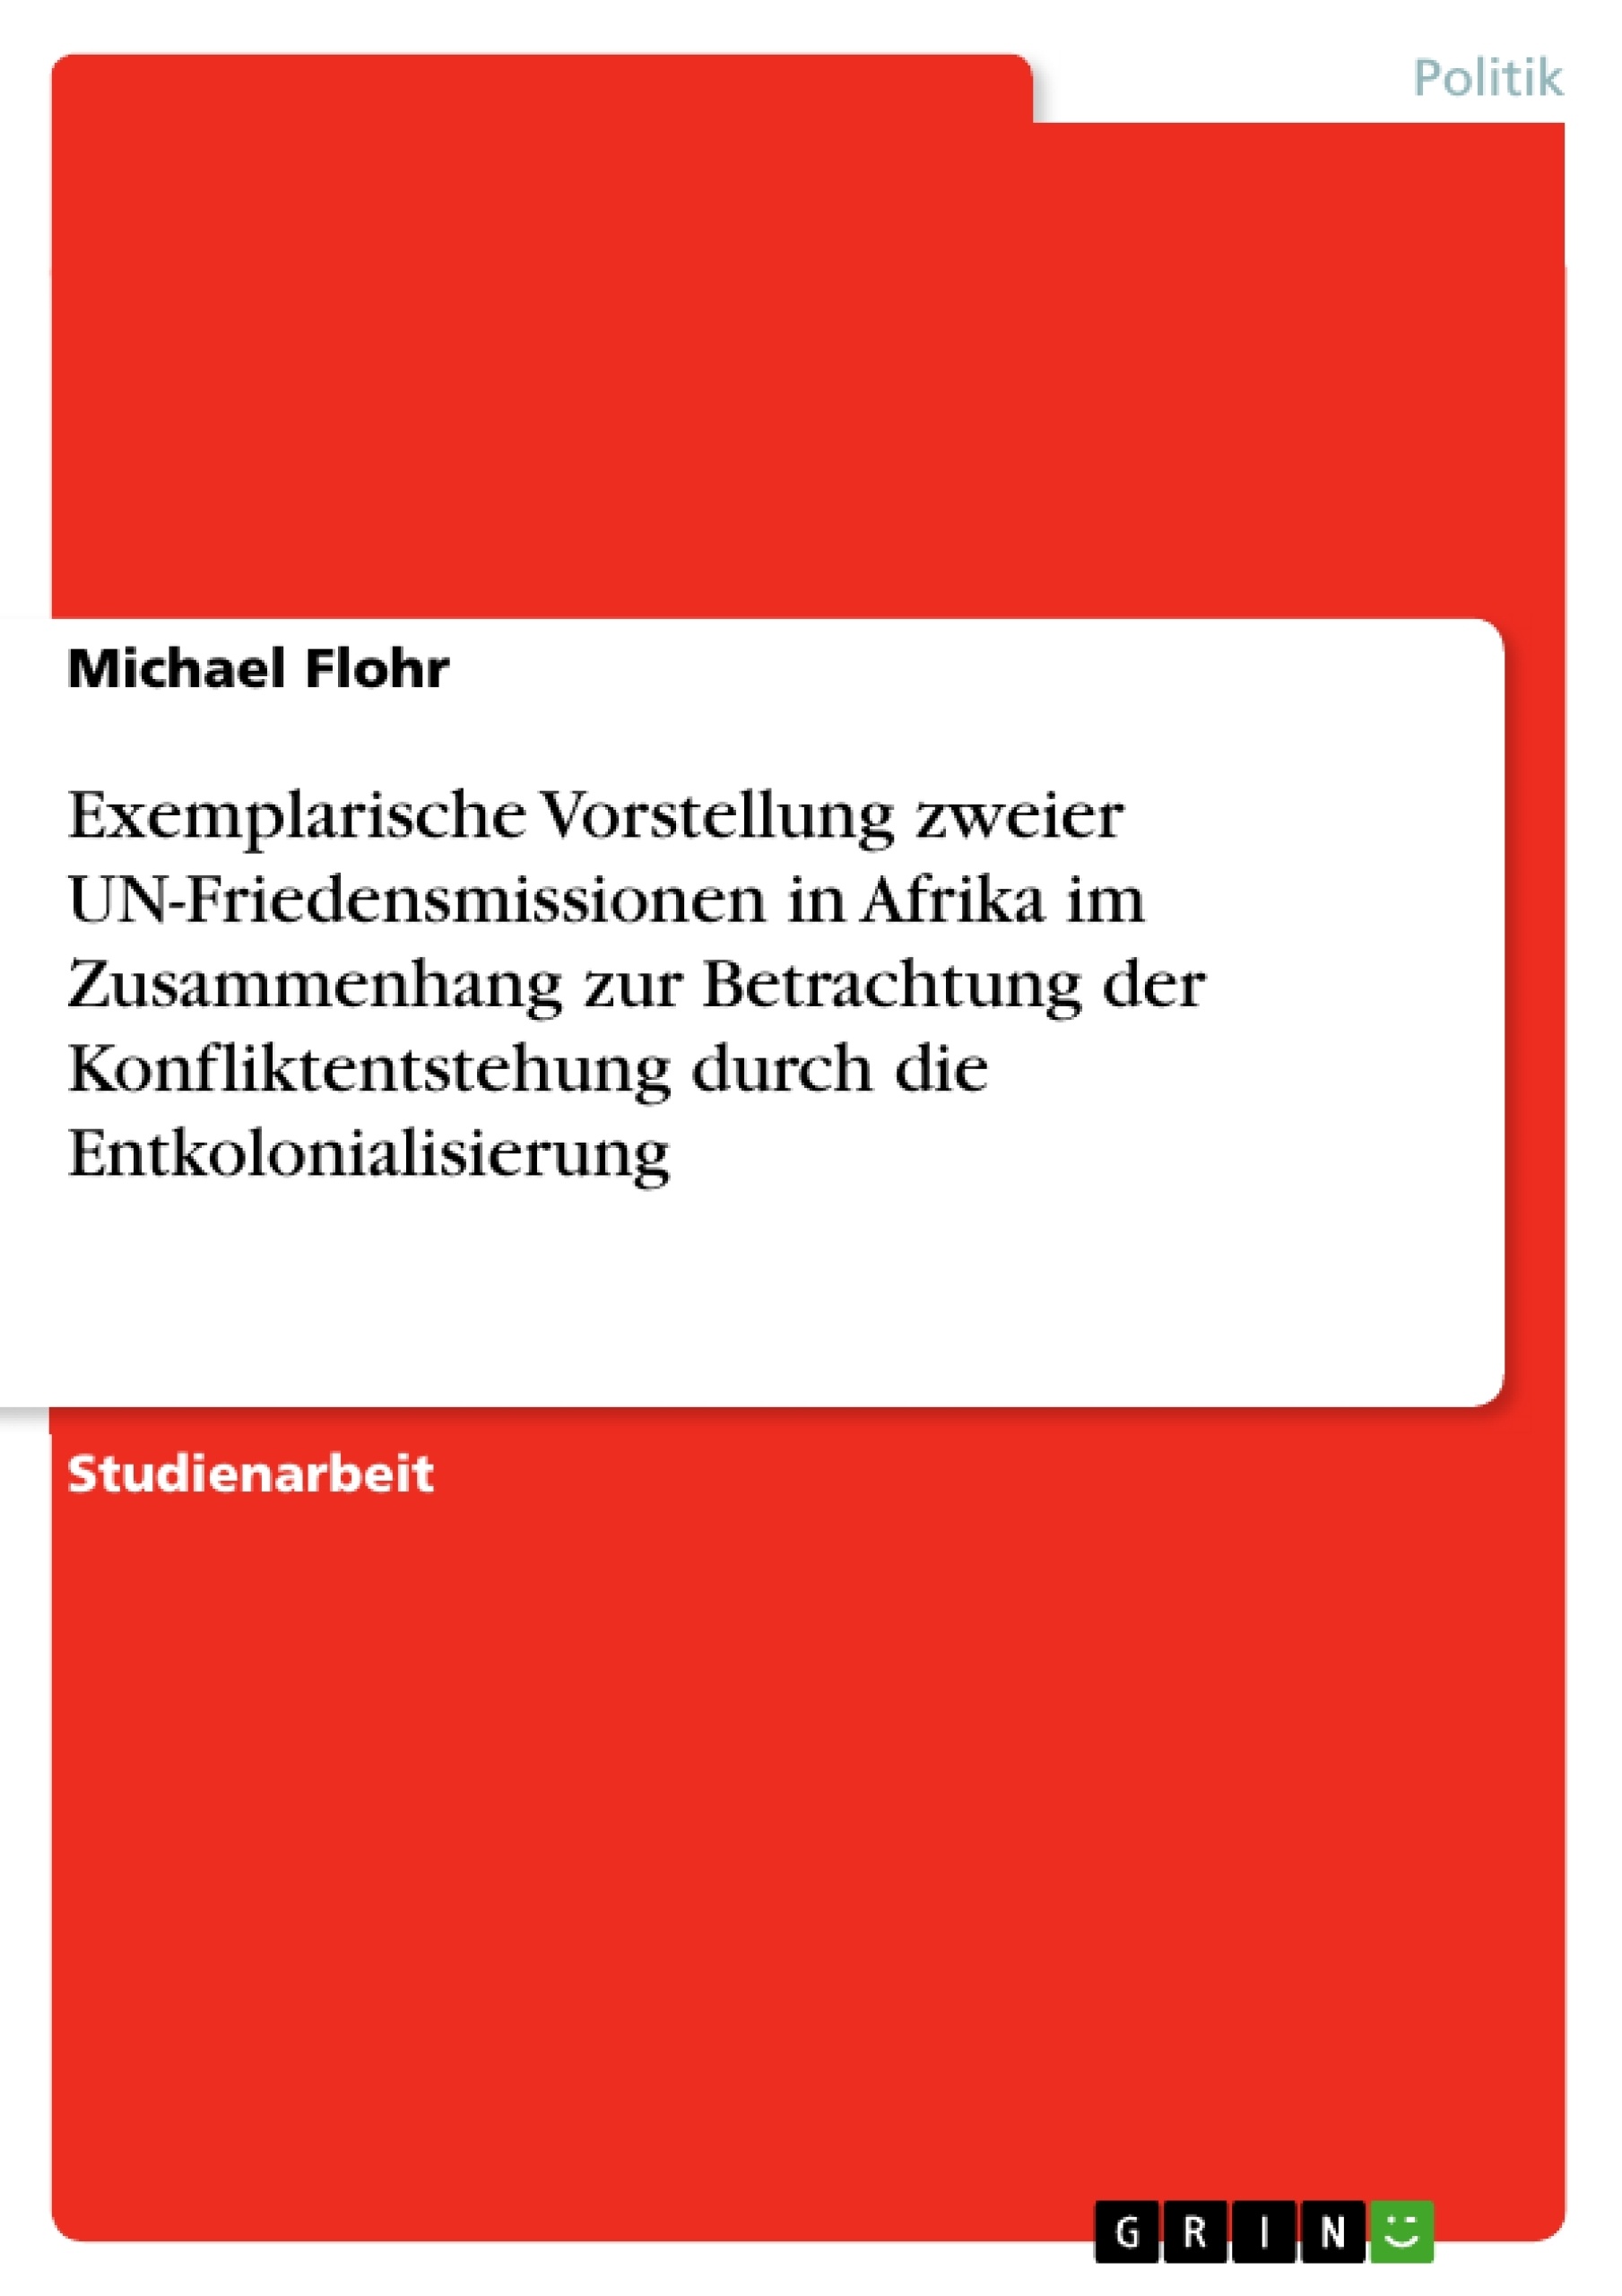 Title: Exemplarische Vorstellung zweier UN-Friedensmissionen in Afrika im Zusammenhang zur Betrachtung der Konfliktentstehung durch die Entkolonialisierung